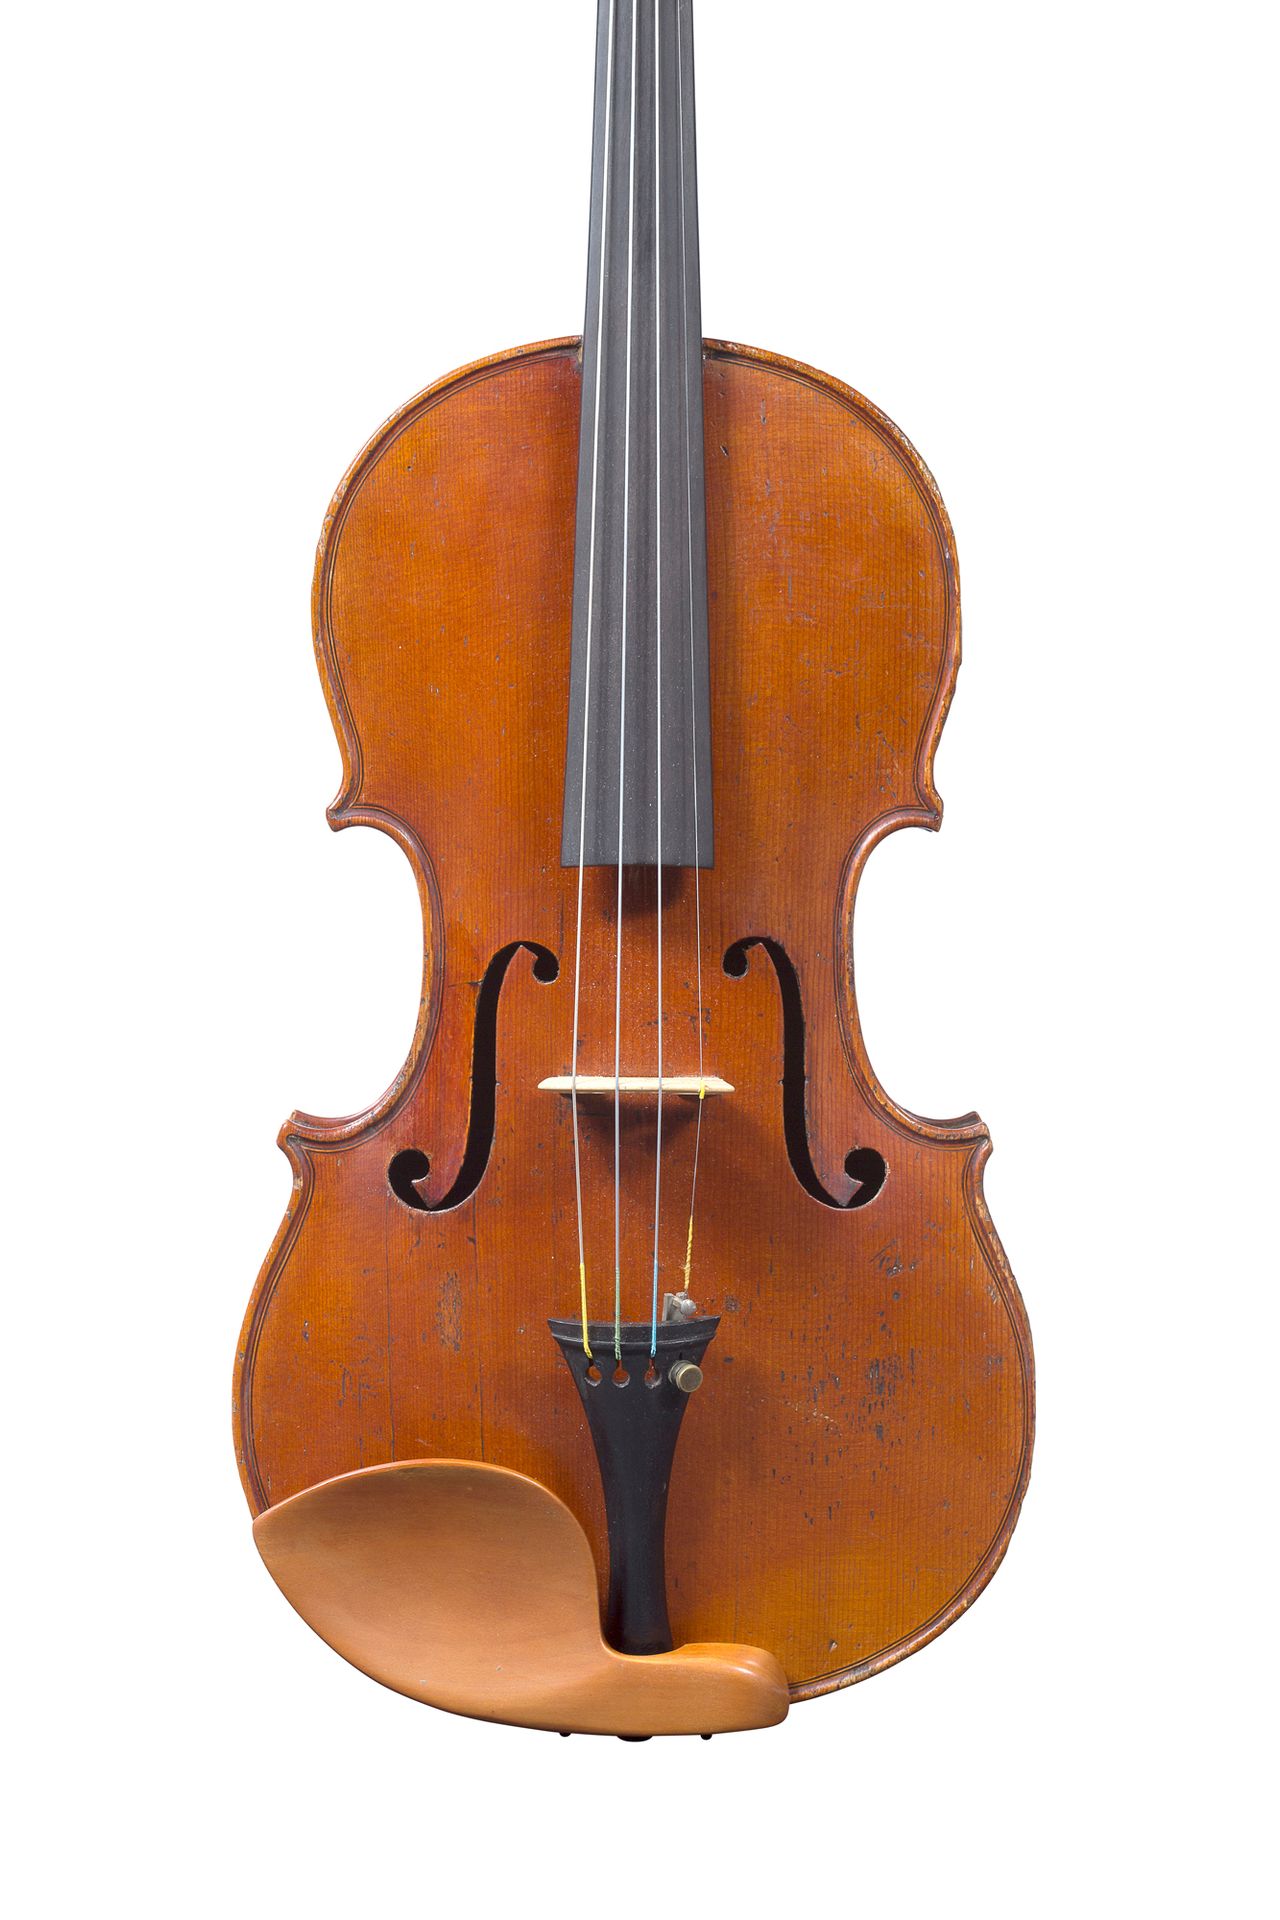 Null Violine von Dominique Didelot.
Gemacht in Mirecourt hergestellt um 1830-40.&hellip;